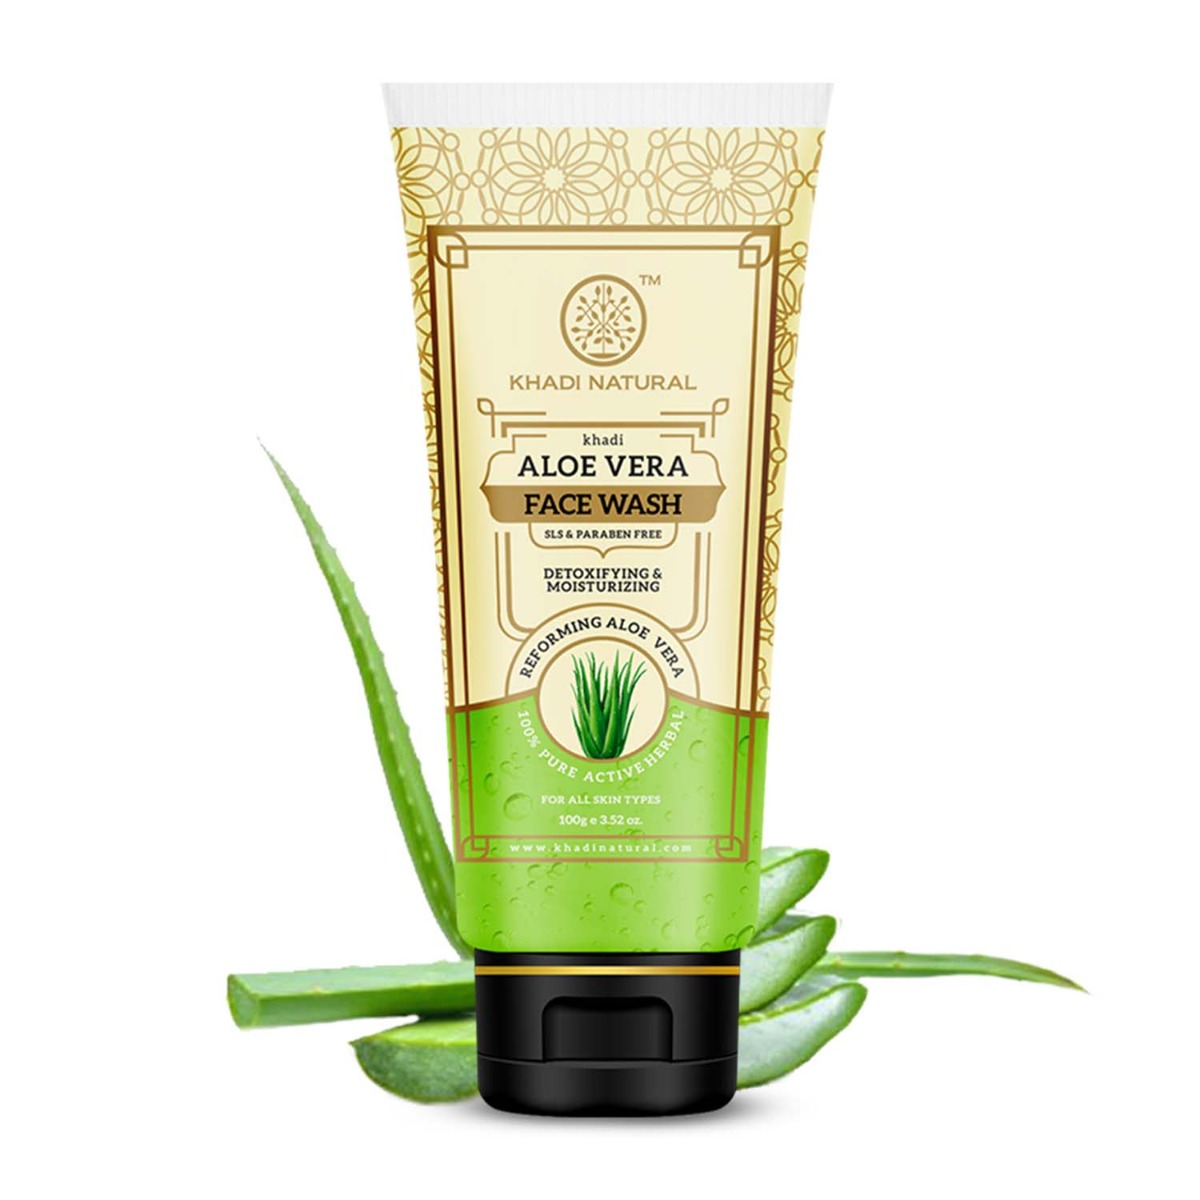 Khadi Natural Aloe Vera Face Wash Sls & Paraben Free, 100gm